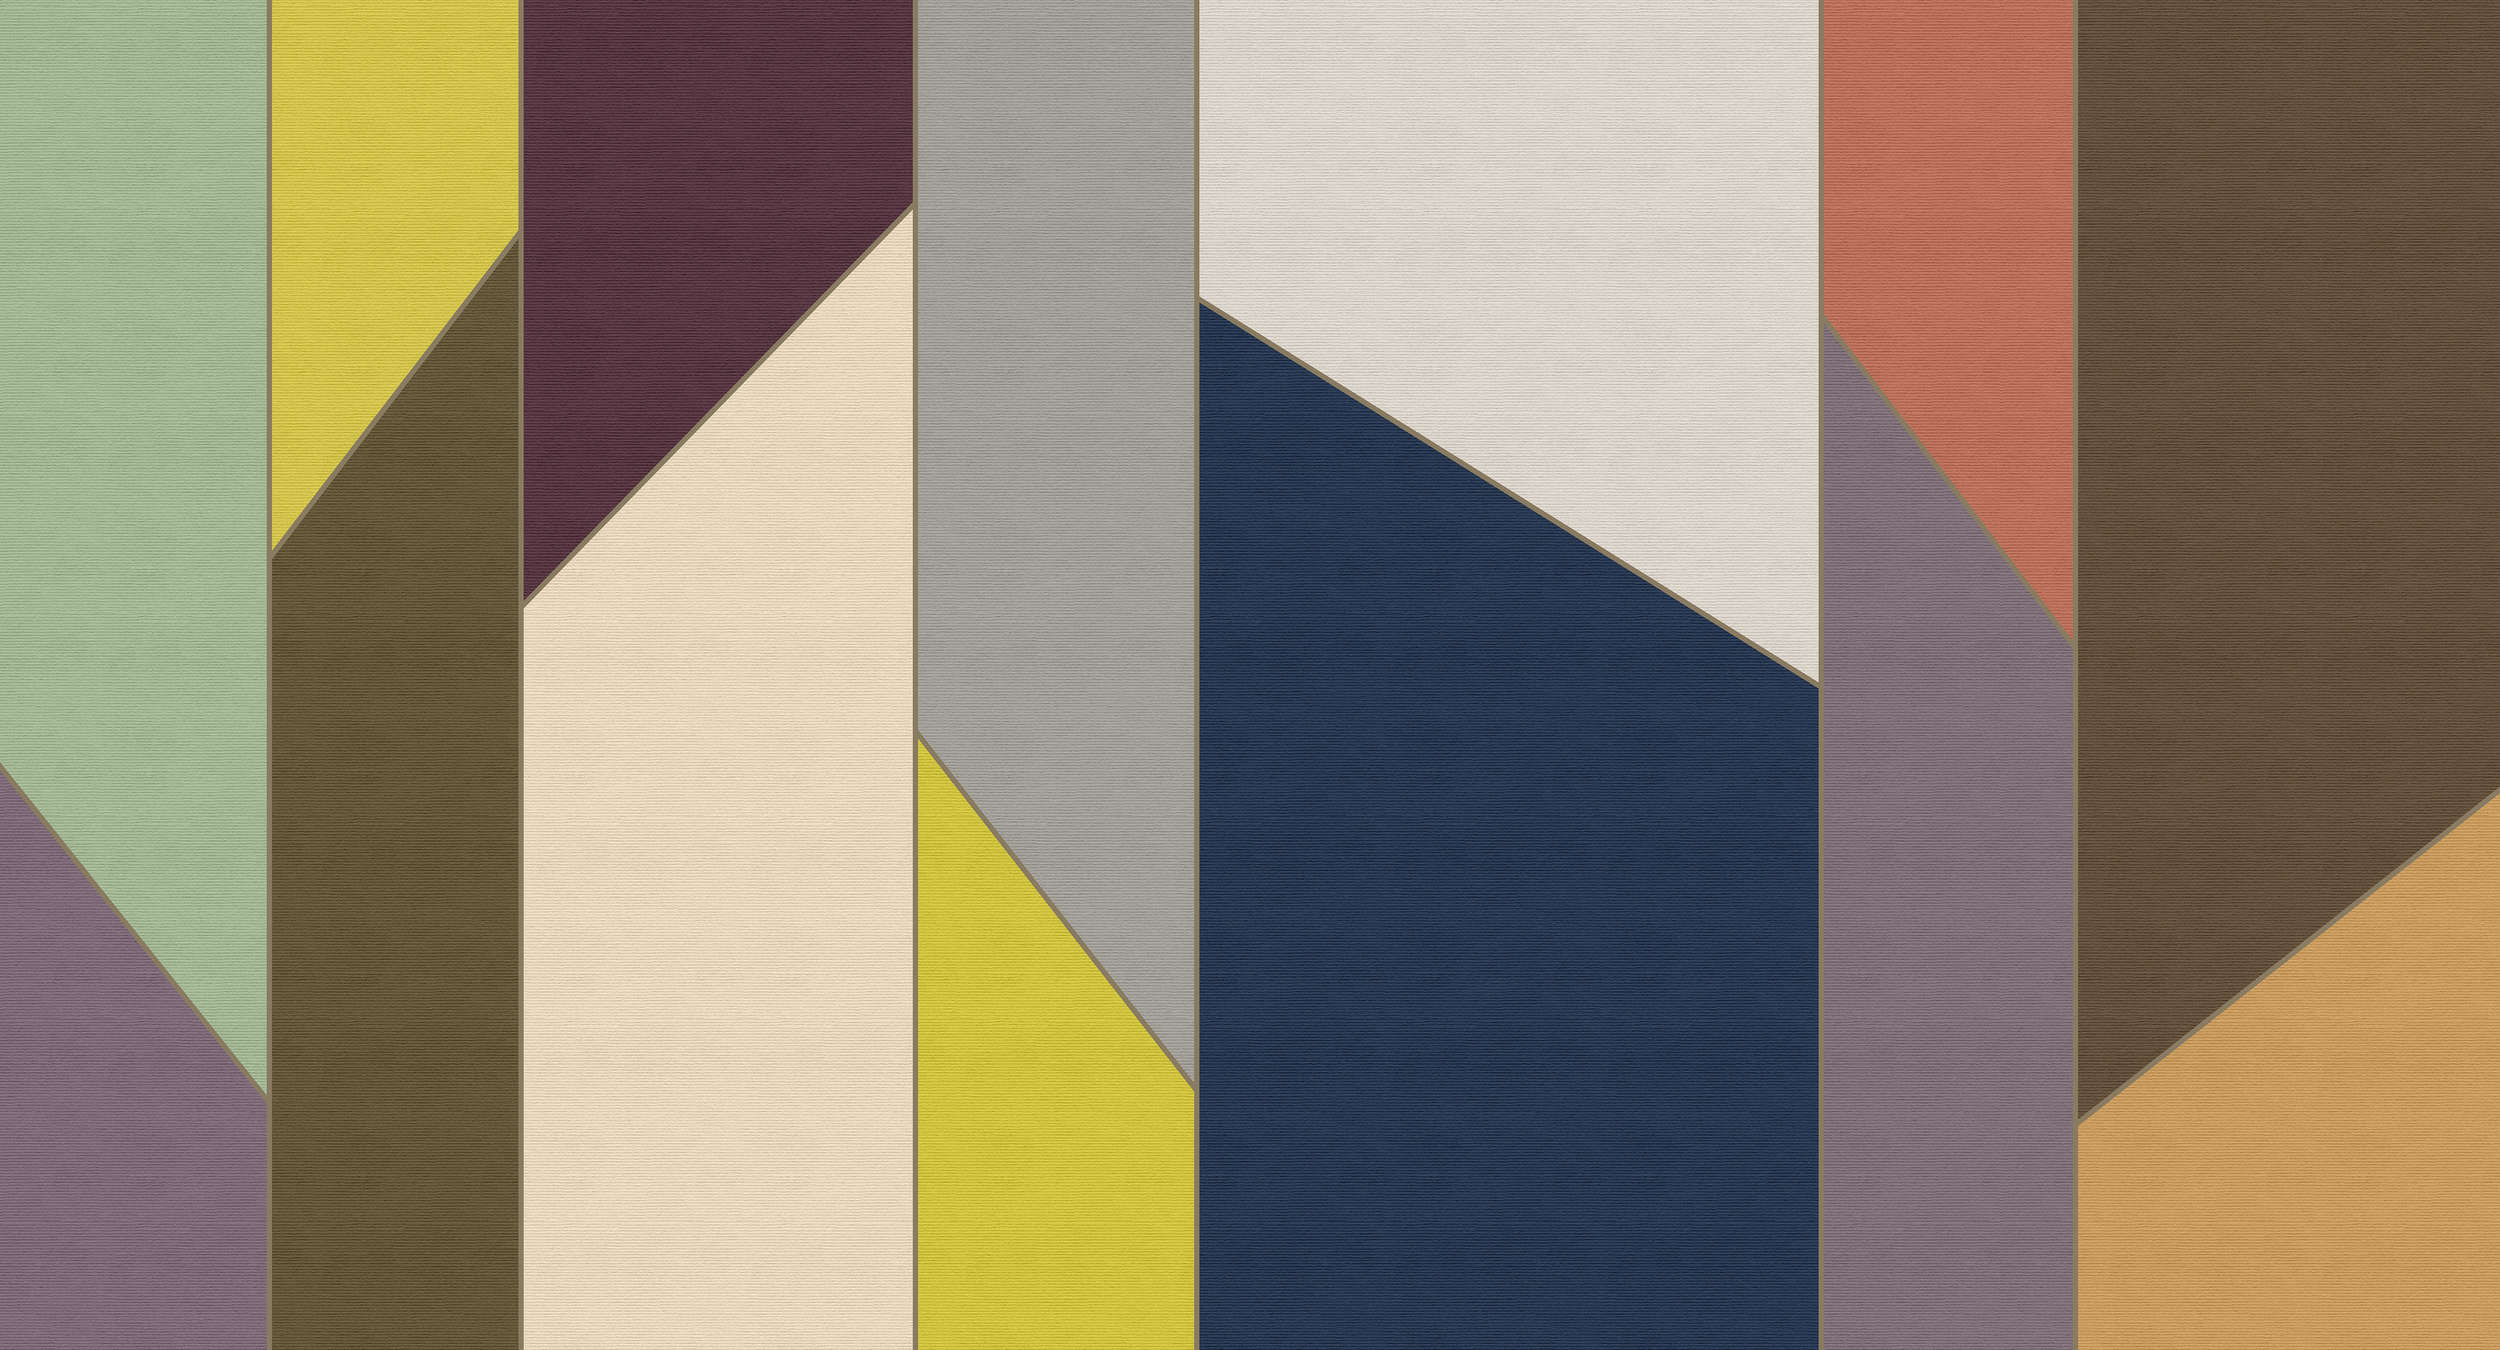             Geometry 4 - Papier peint à rayures design rétro coloré à structure côtelée - beige, bleu | nacré intissé lisse
        